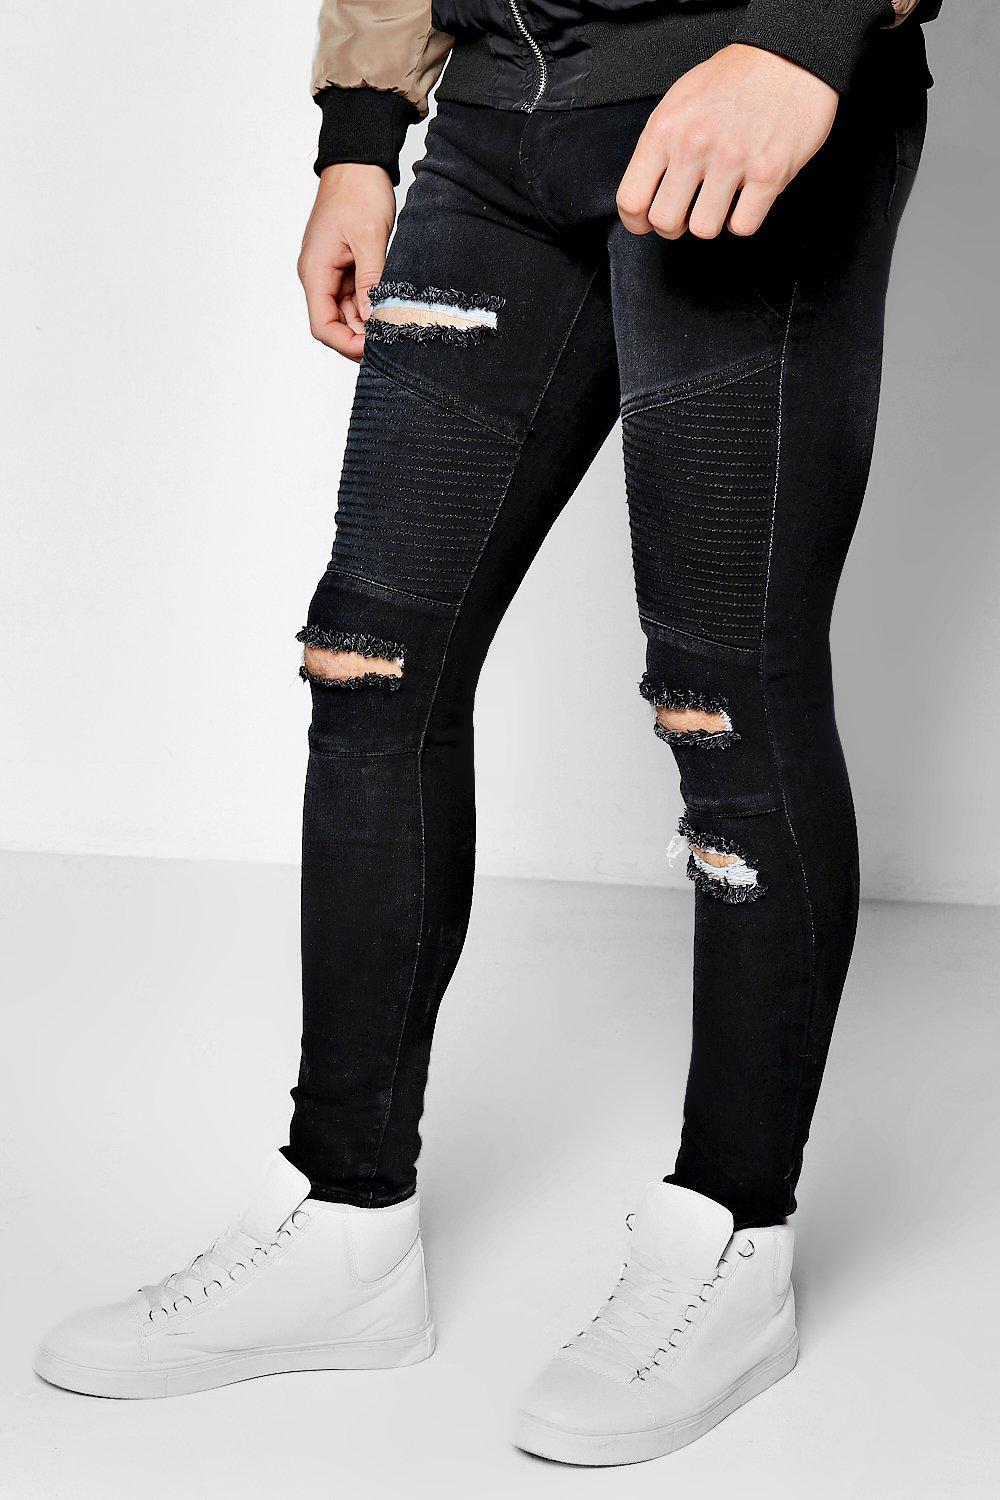 men's ariat jeans